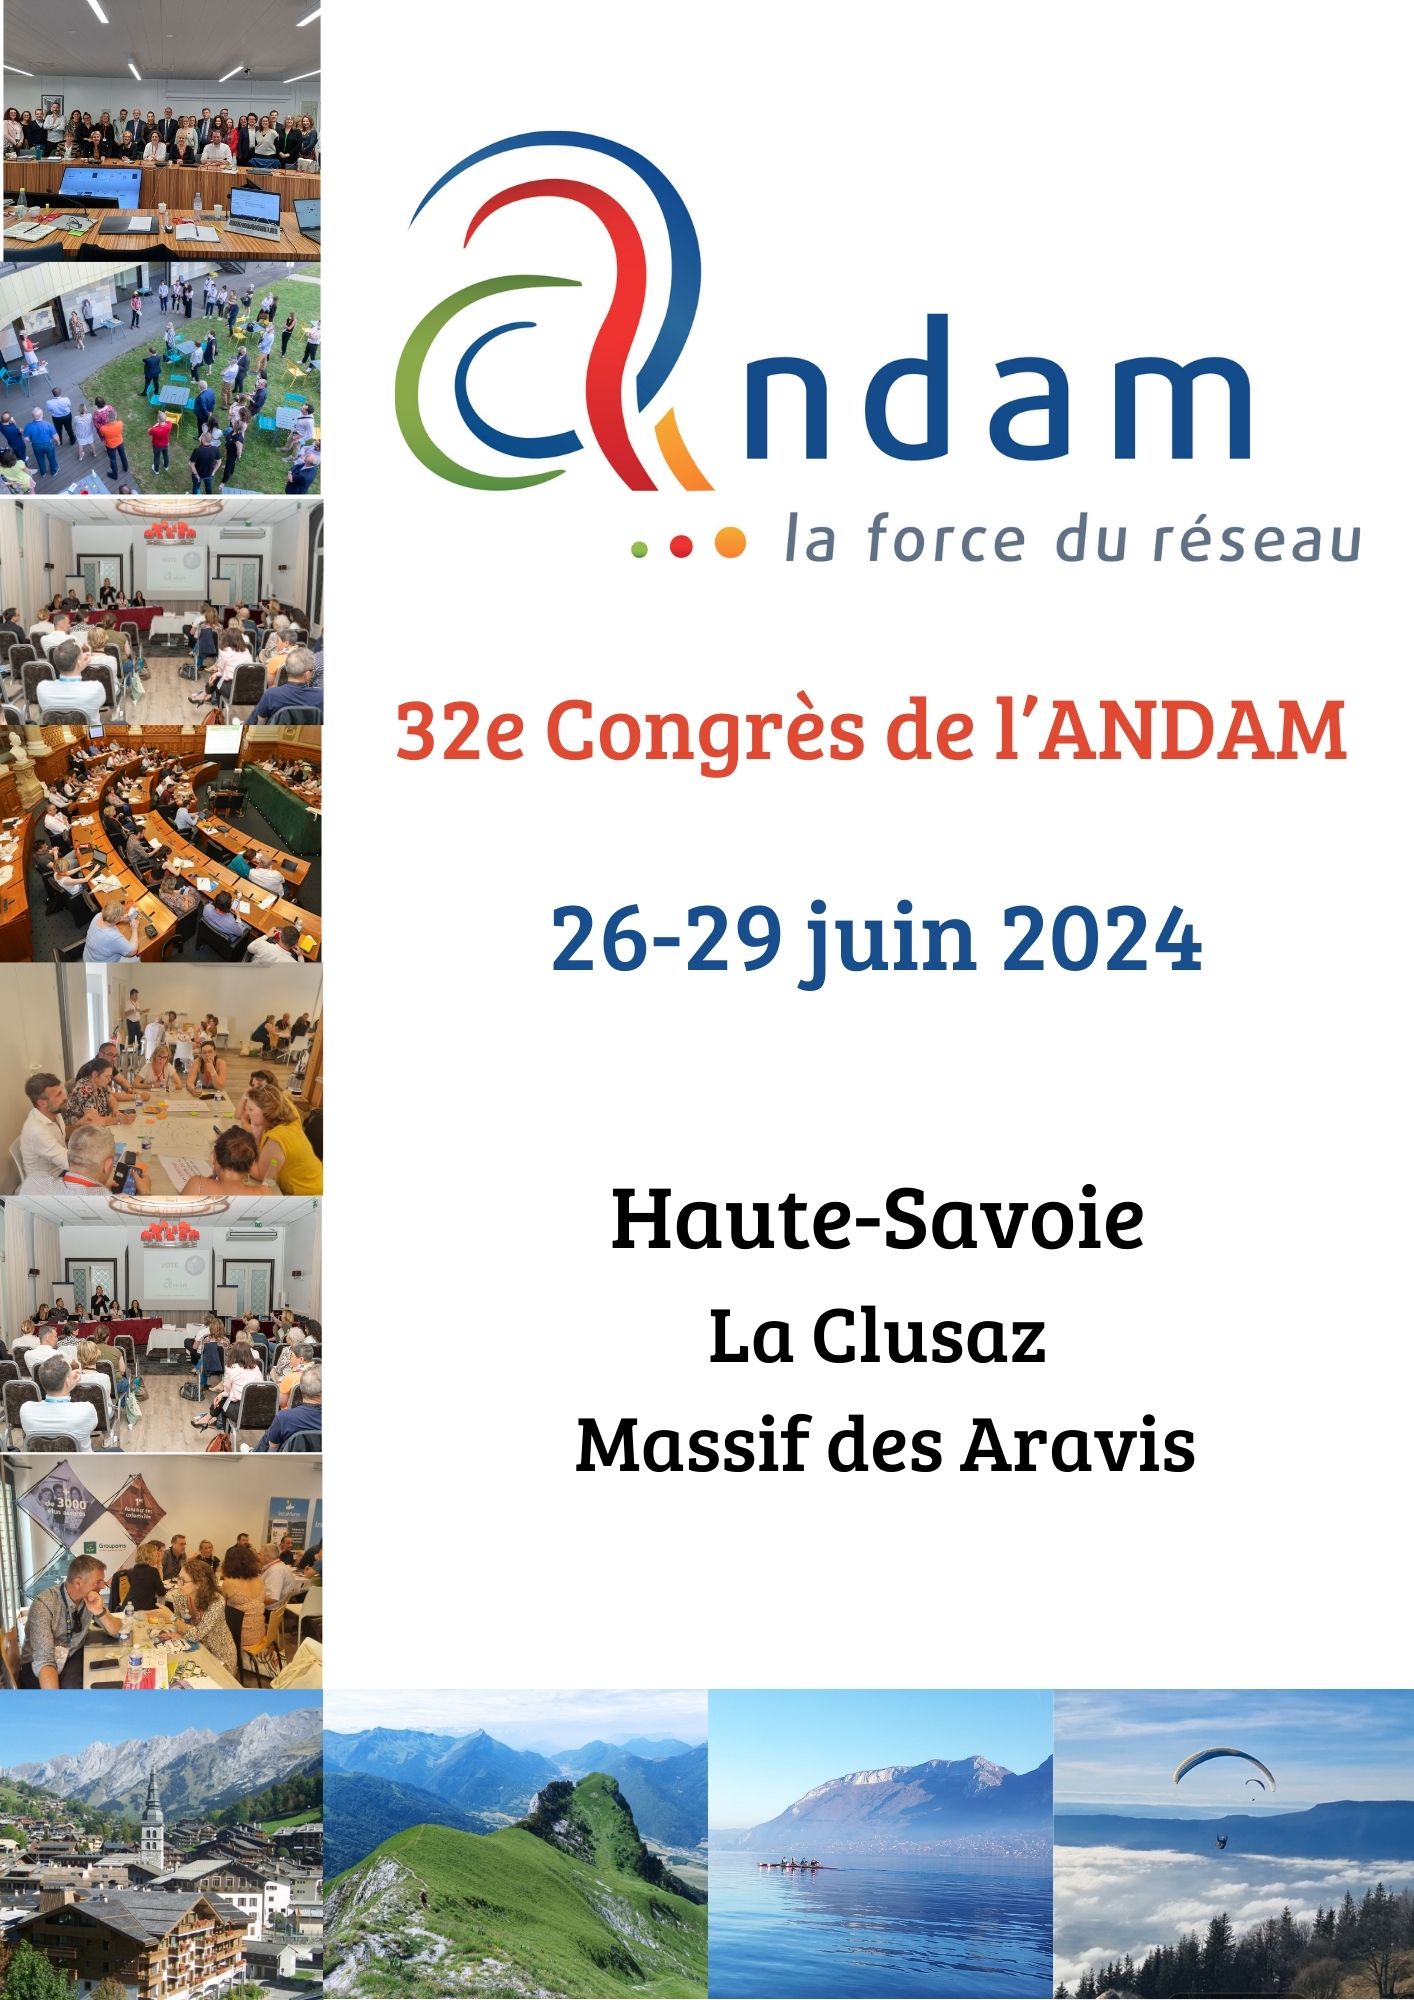 32e Congrès de l’ANDAM en Haute-Savoie